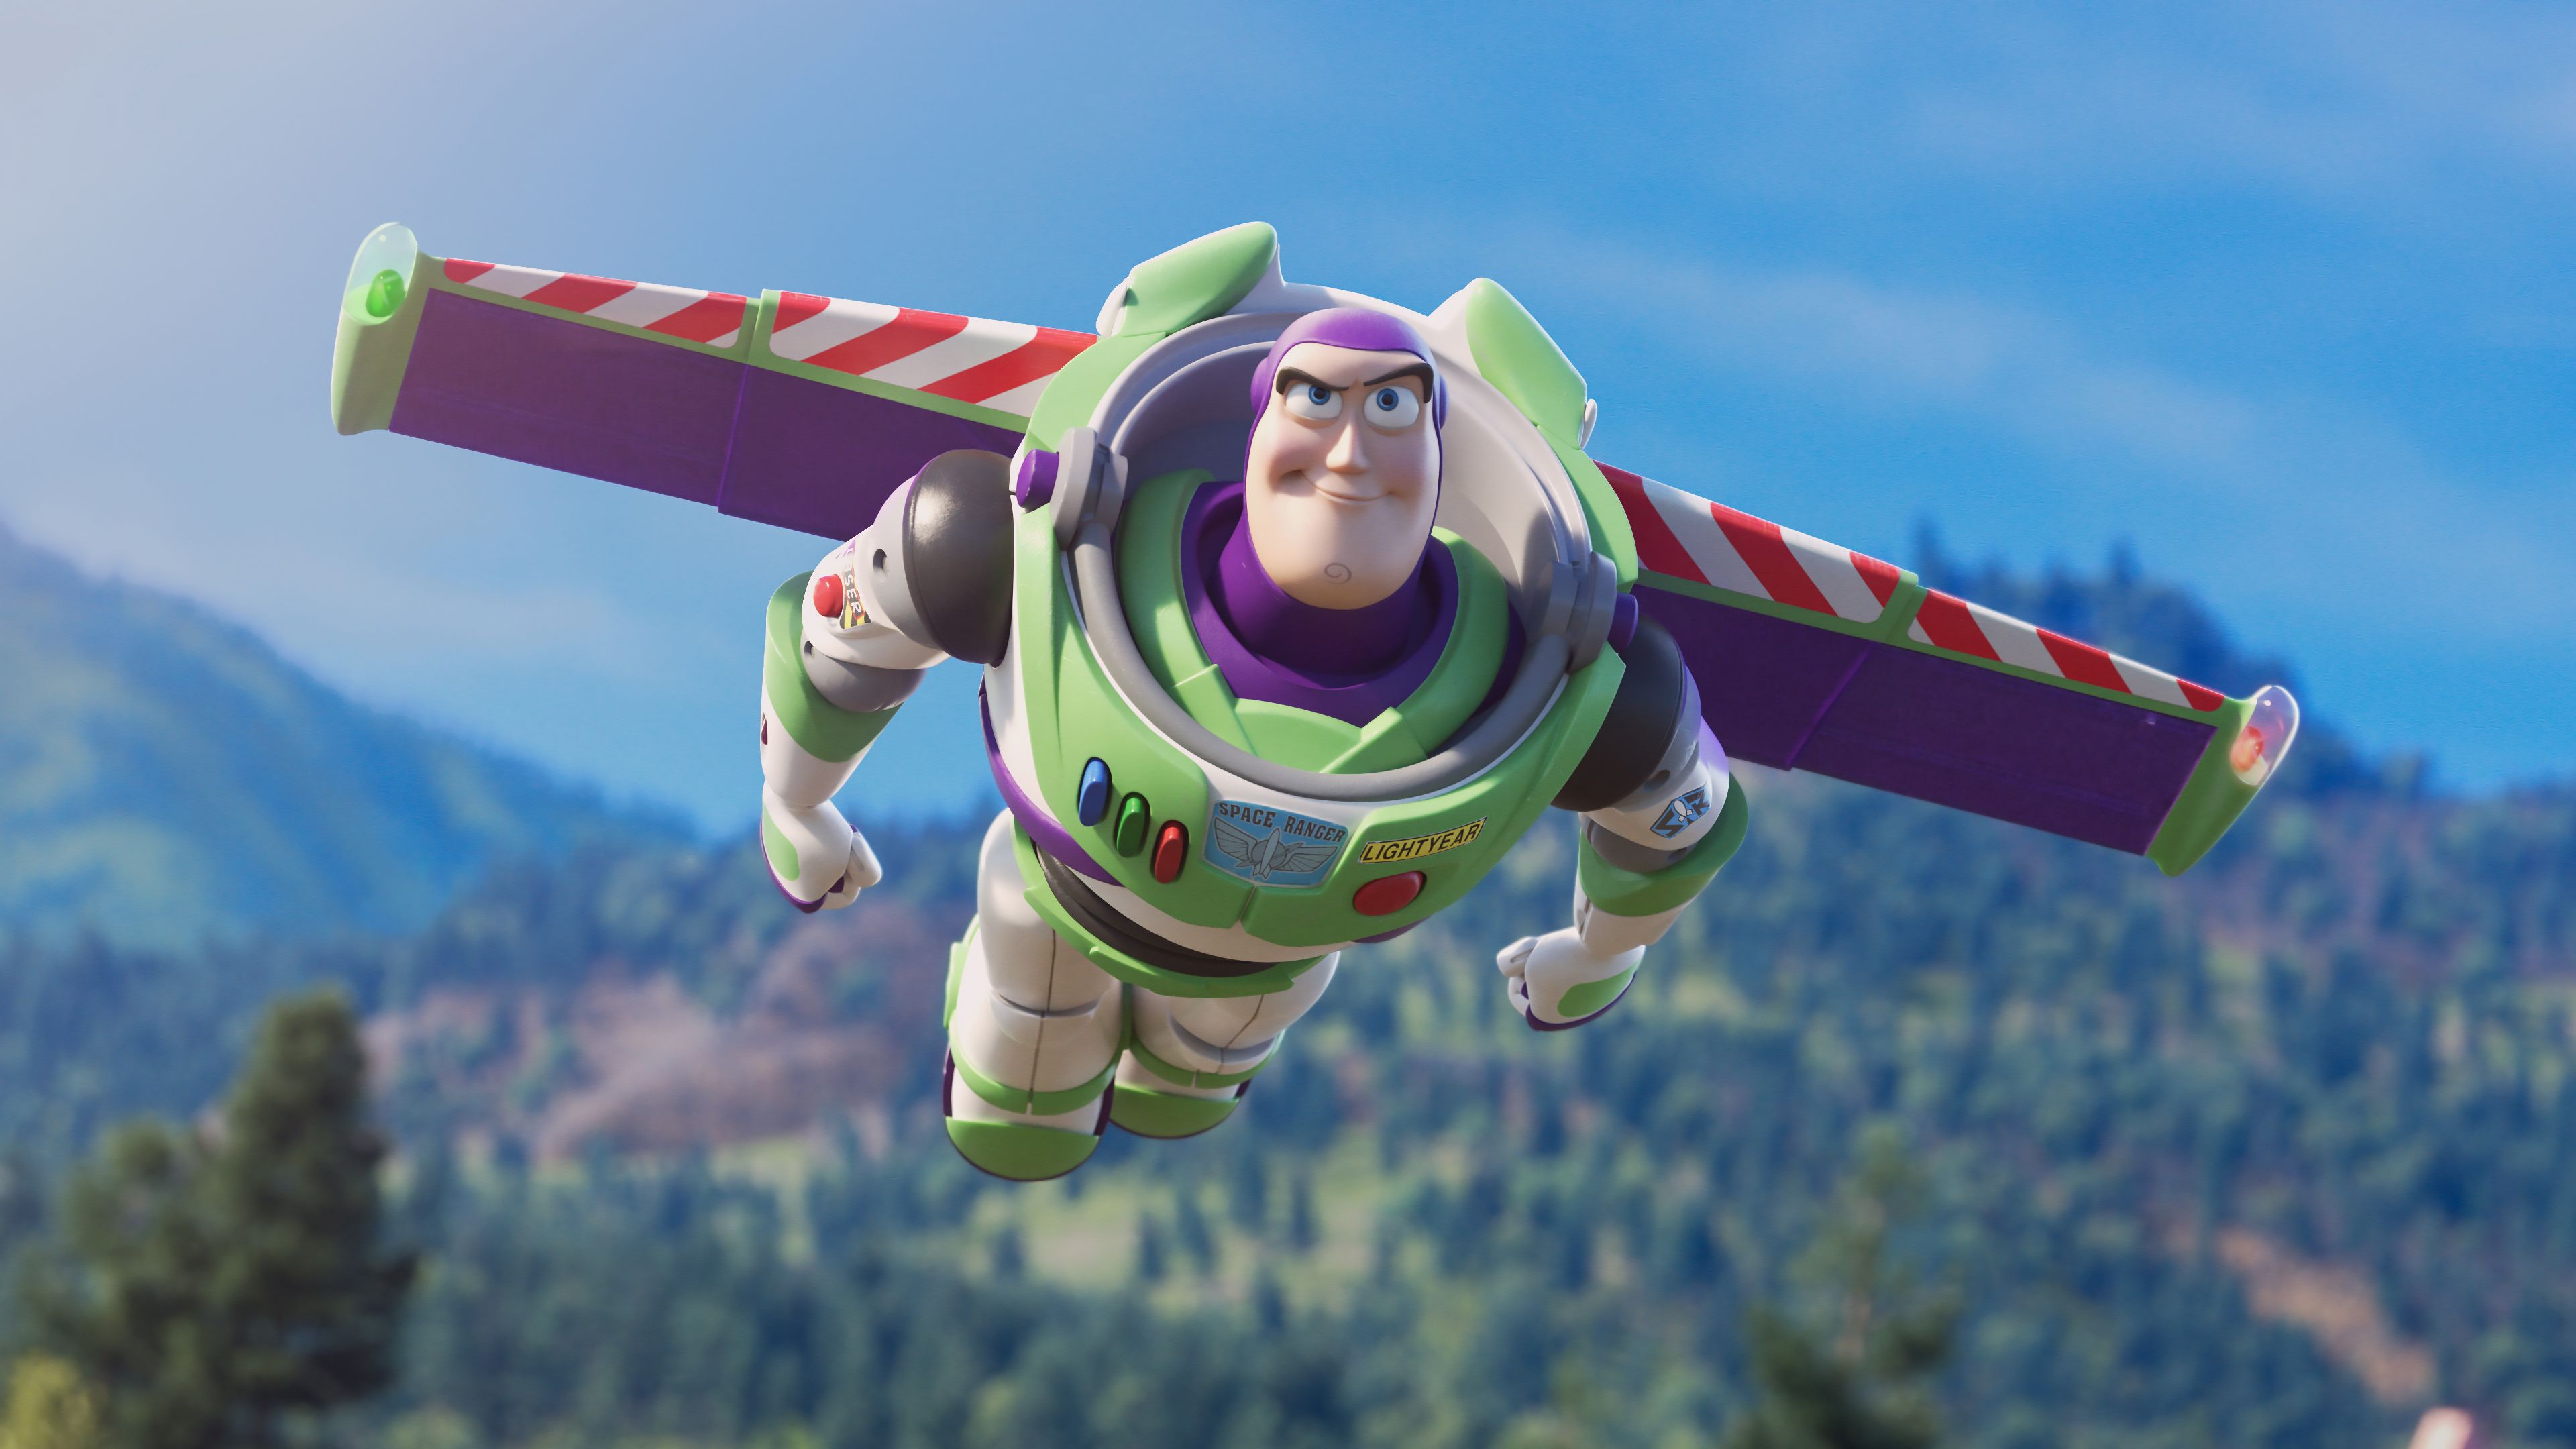 Buzz Lightyear flying Toy Story 4 Wallpaper 4k Ultra HD